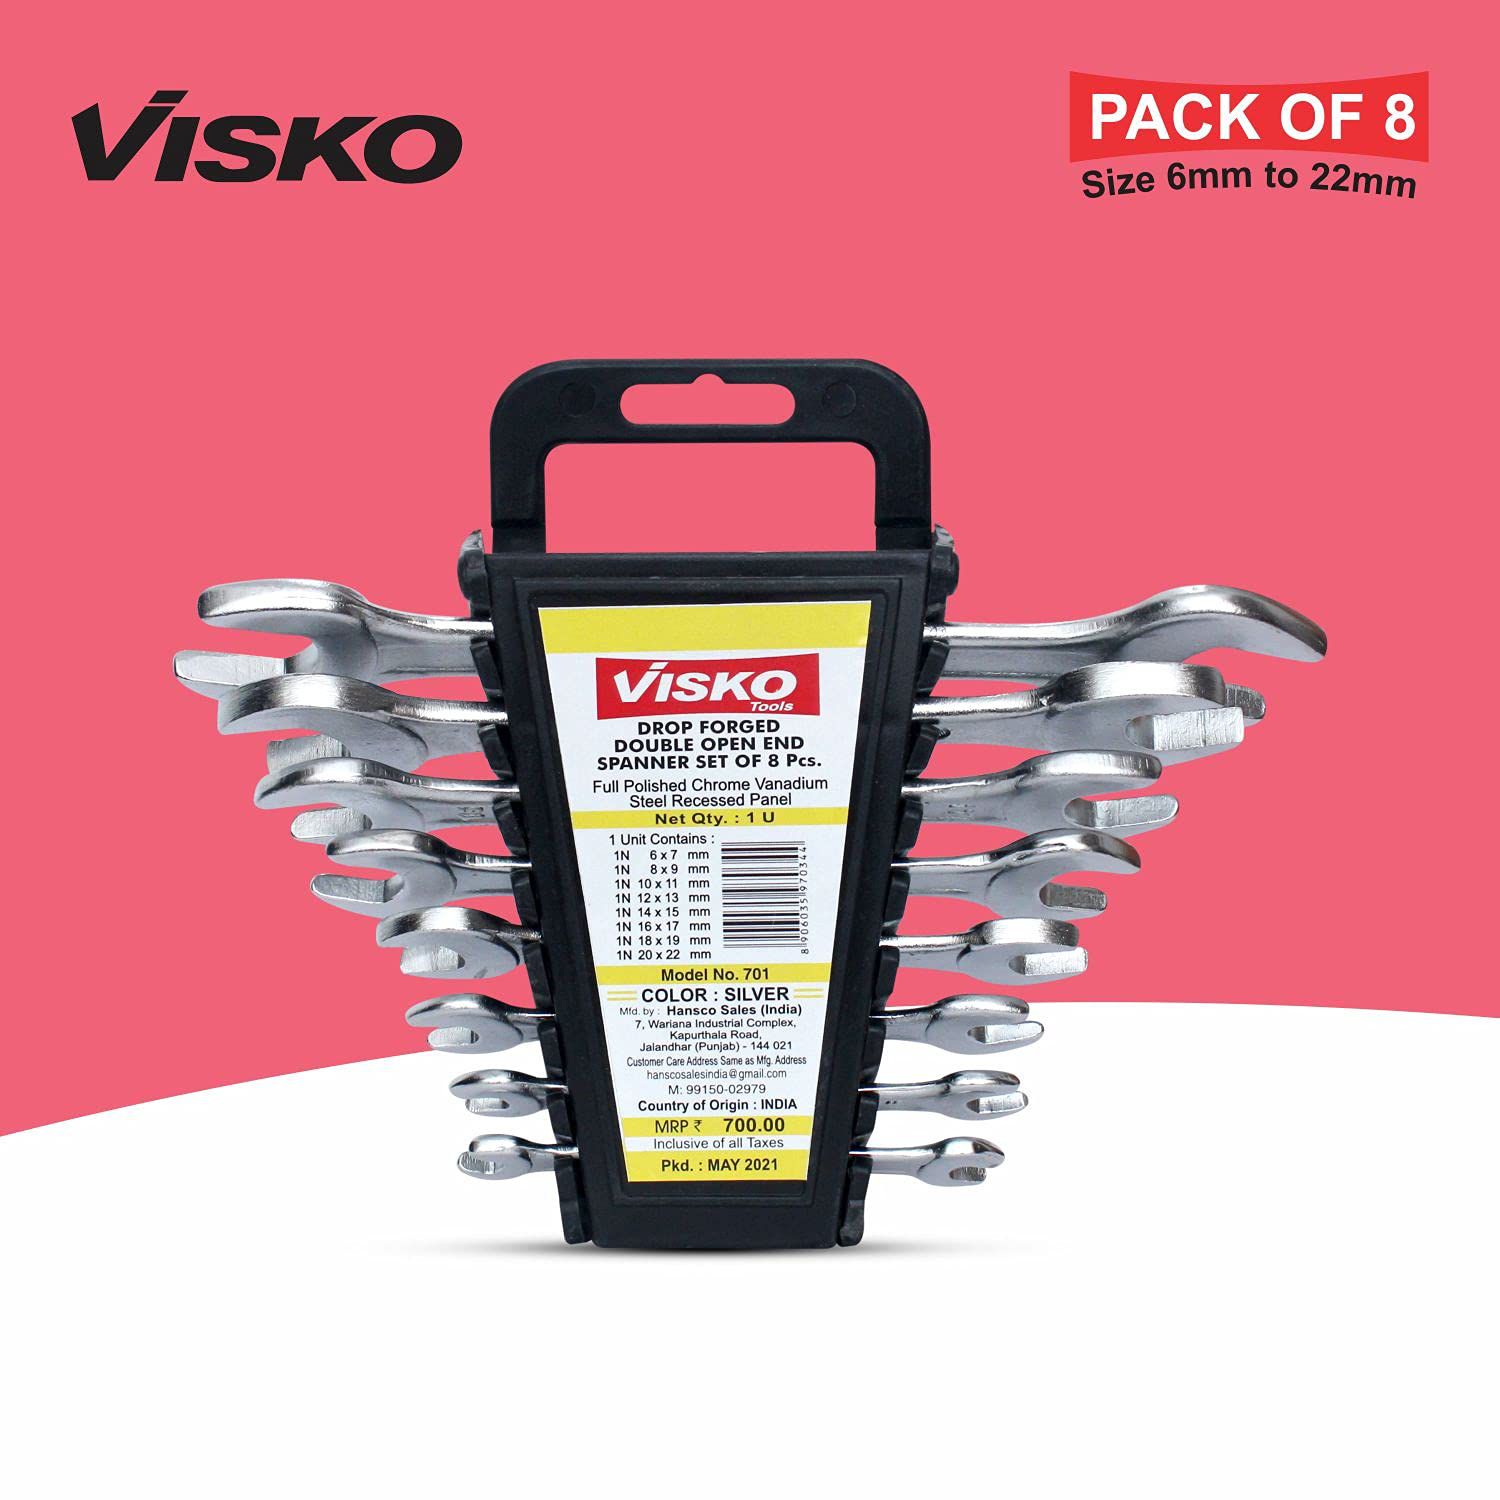 VISKO 701-Socket Wrench Double Sided Open End Spanner Set Tool Kit  (Pack of 8) Sizes-19cm,17cm,15cm,14cm,13cm,12cm,11cm,10cm.